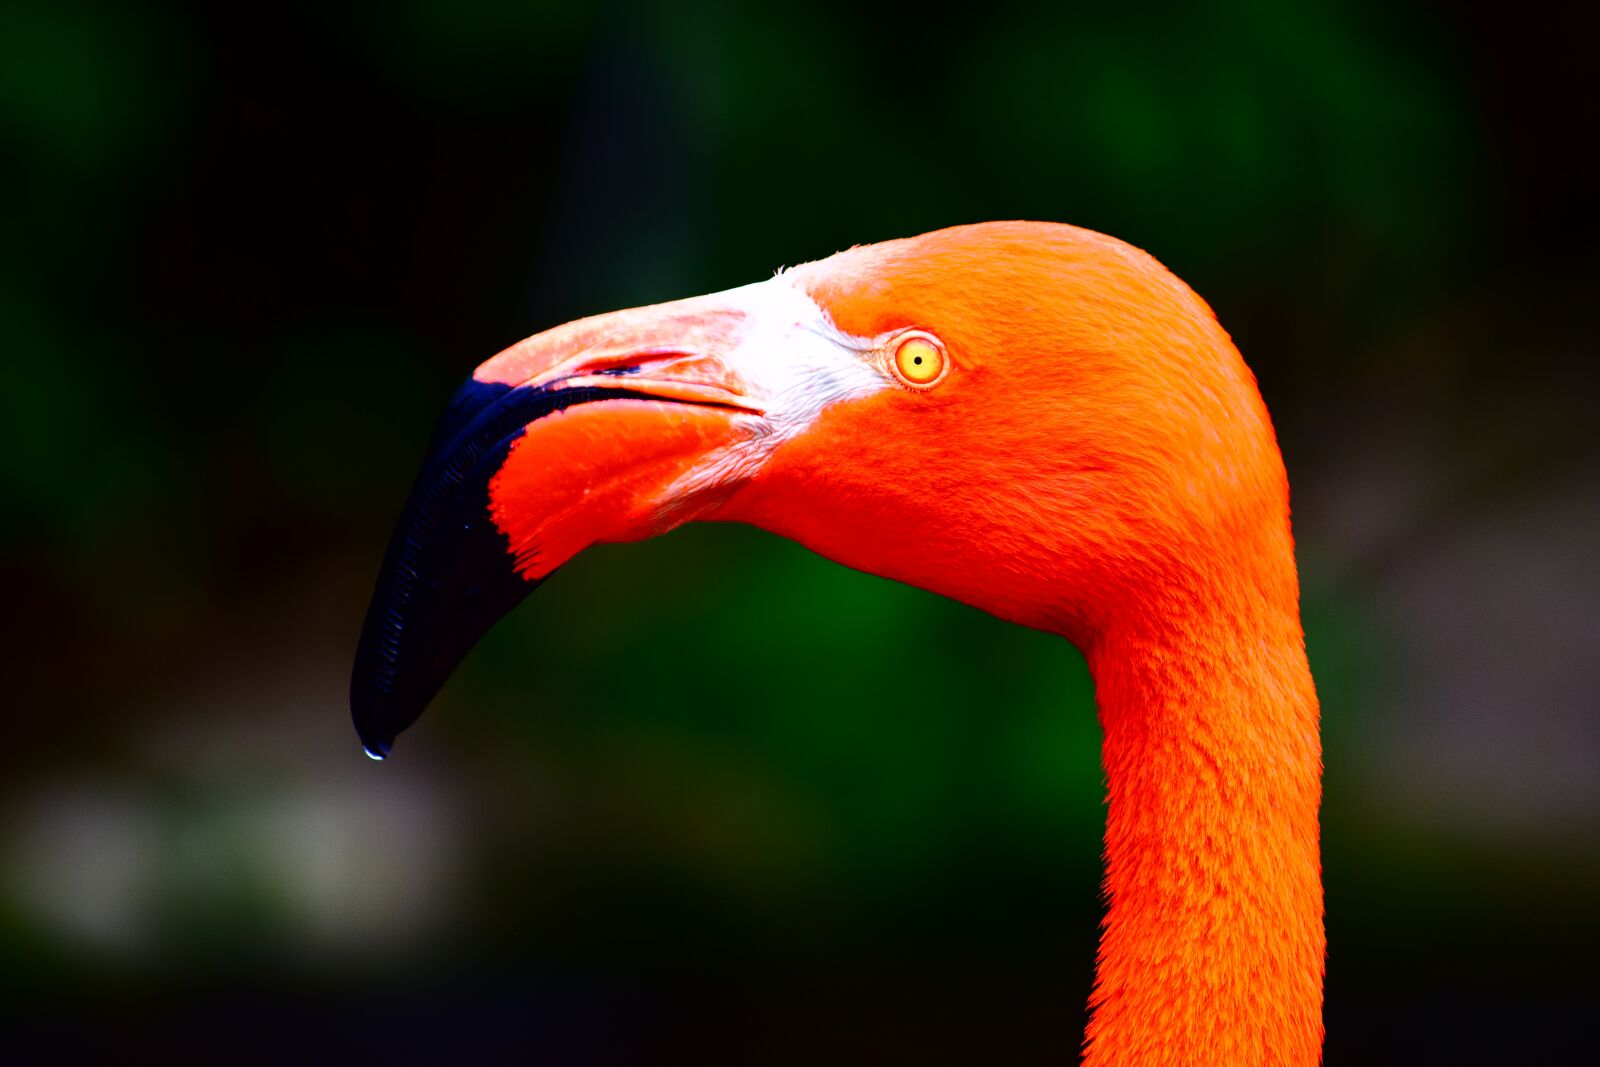 Nikon D3300 sample photo. Flamingo, bird, close up photography